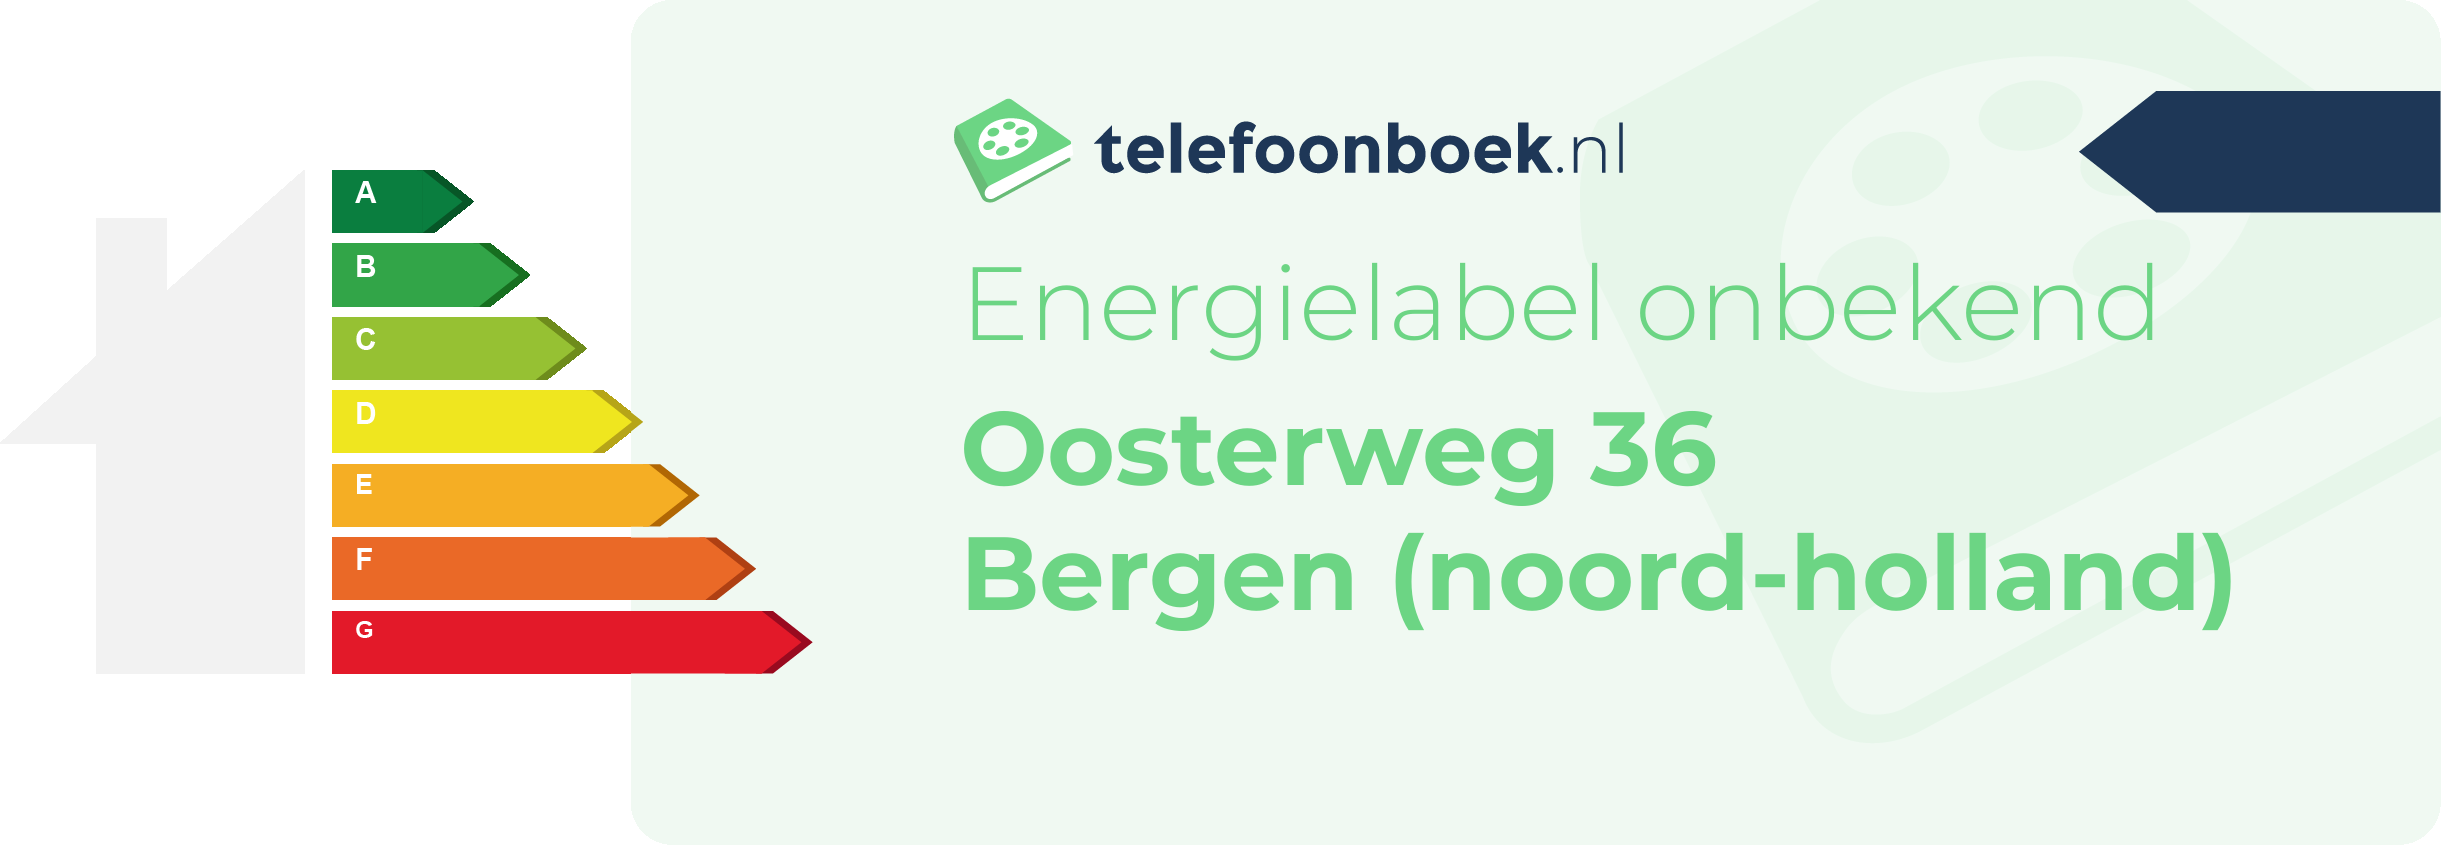 Energielabel Oosterweg 36 Bergen (Noord-Holland)